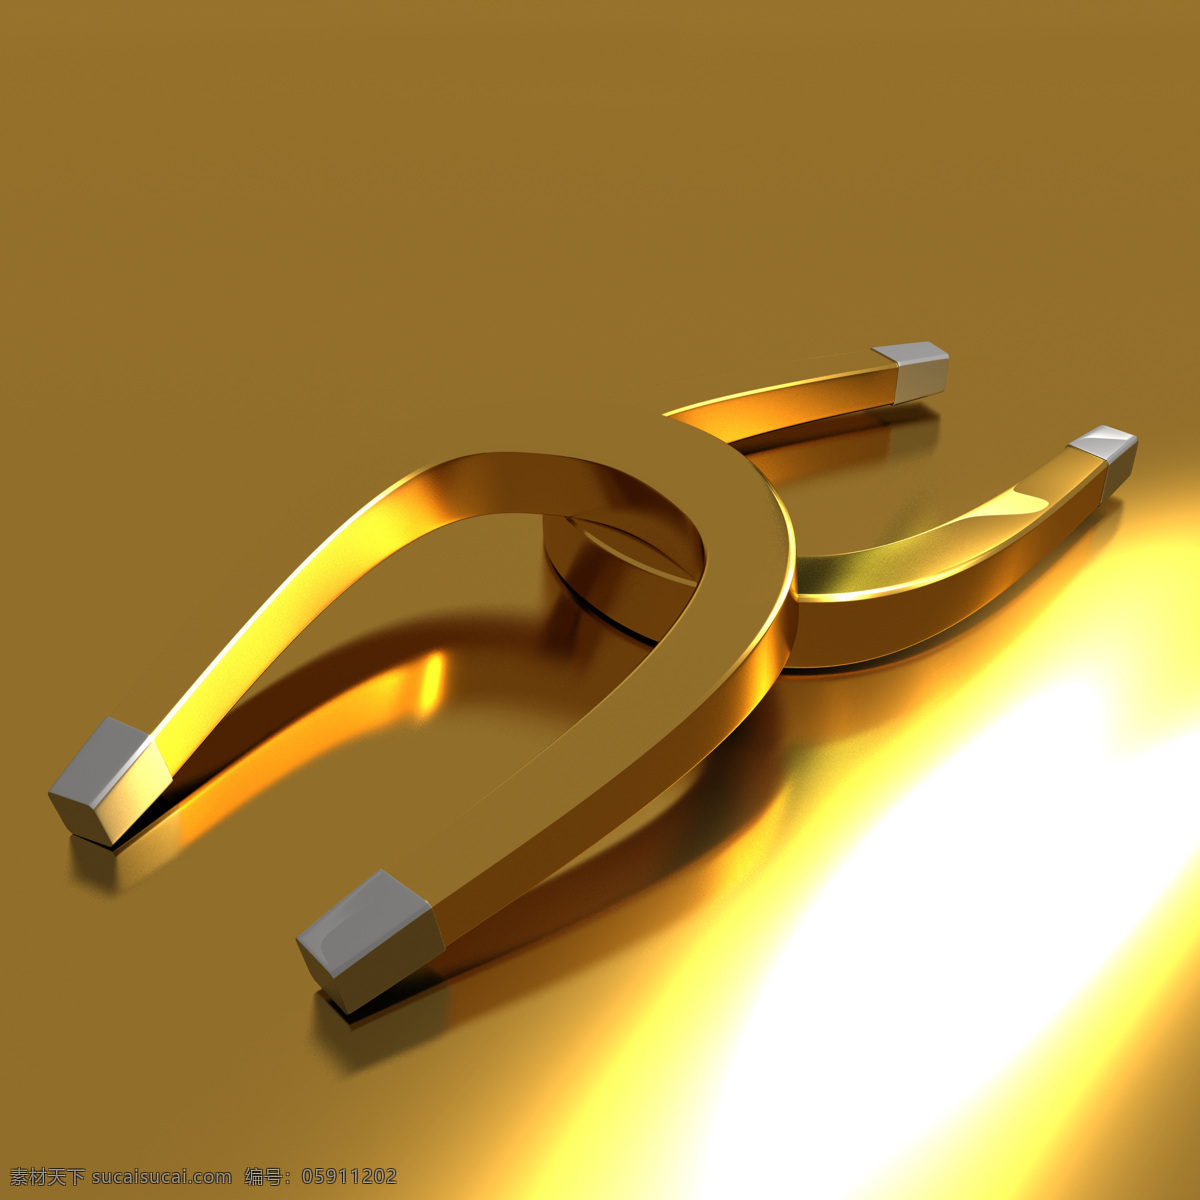 金色磁铁 磁铁 金色 金属 商务 马蹄铁 u形铁 科技 高清 3d作品 3d设计